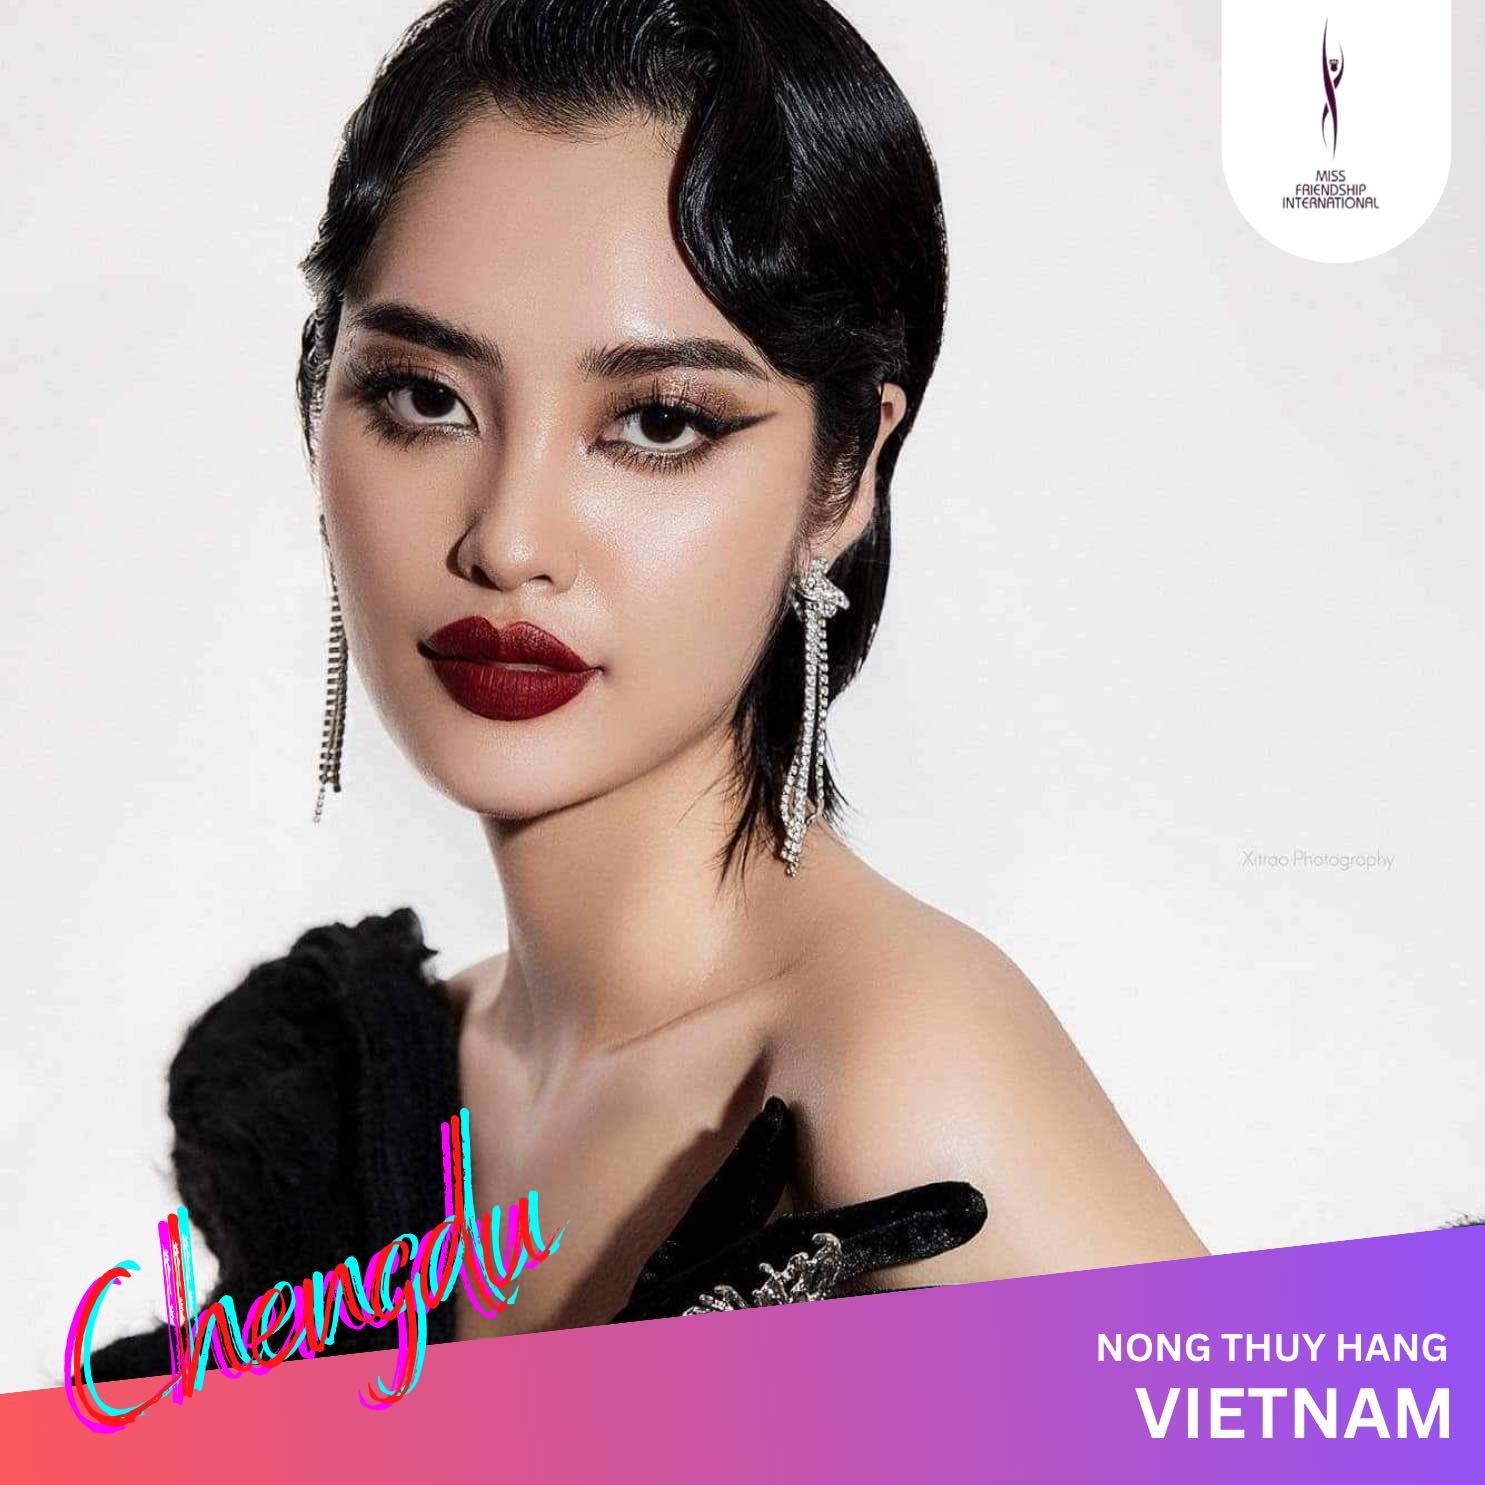 Năm 2023, nàng hậu lại “lỡ duyên” với đấu trường nhan sắc quốc tế này một lần nữa khi Miss Earth Vietnam 2023 được tổ chức để tìm kiếm đại diện thi Hoa hậu Trái Đất 2023.